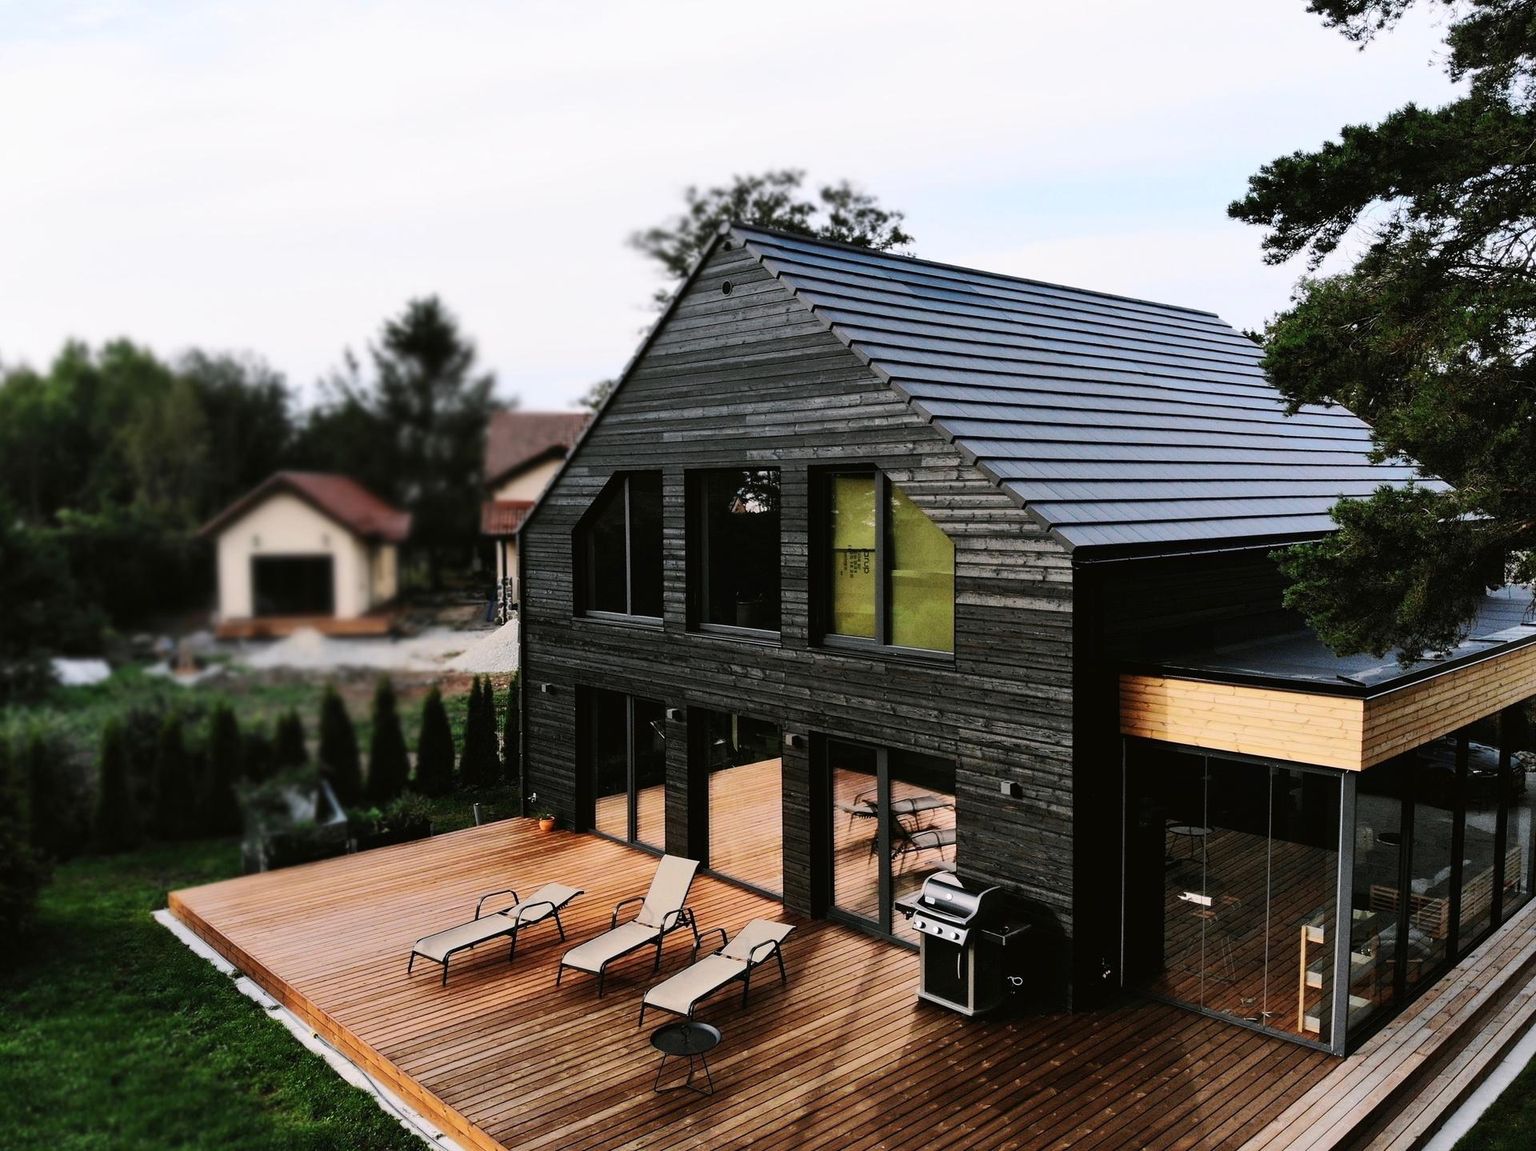 Pildil olev maja sai SolarStone’i päikesepaneelidega katuse tänavu.